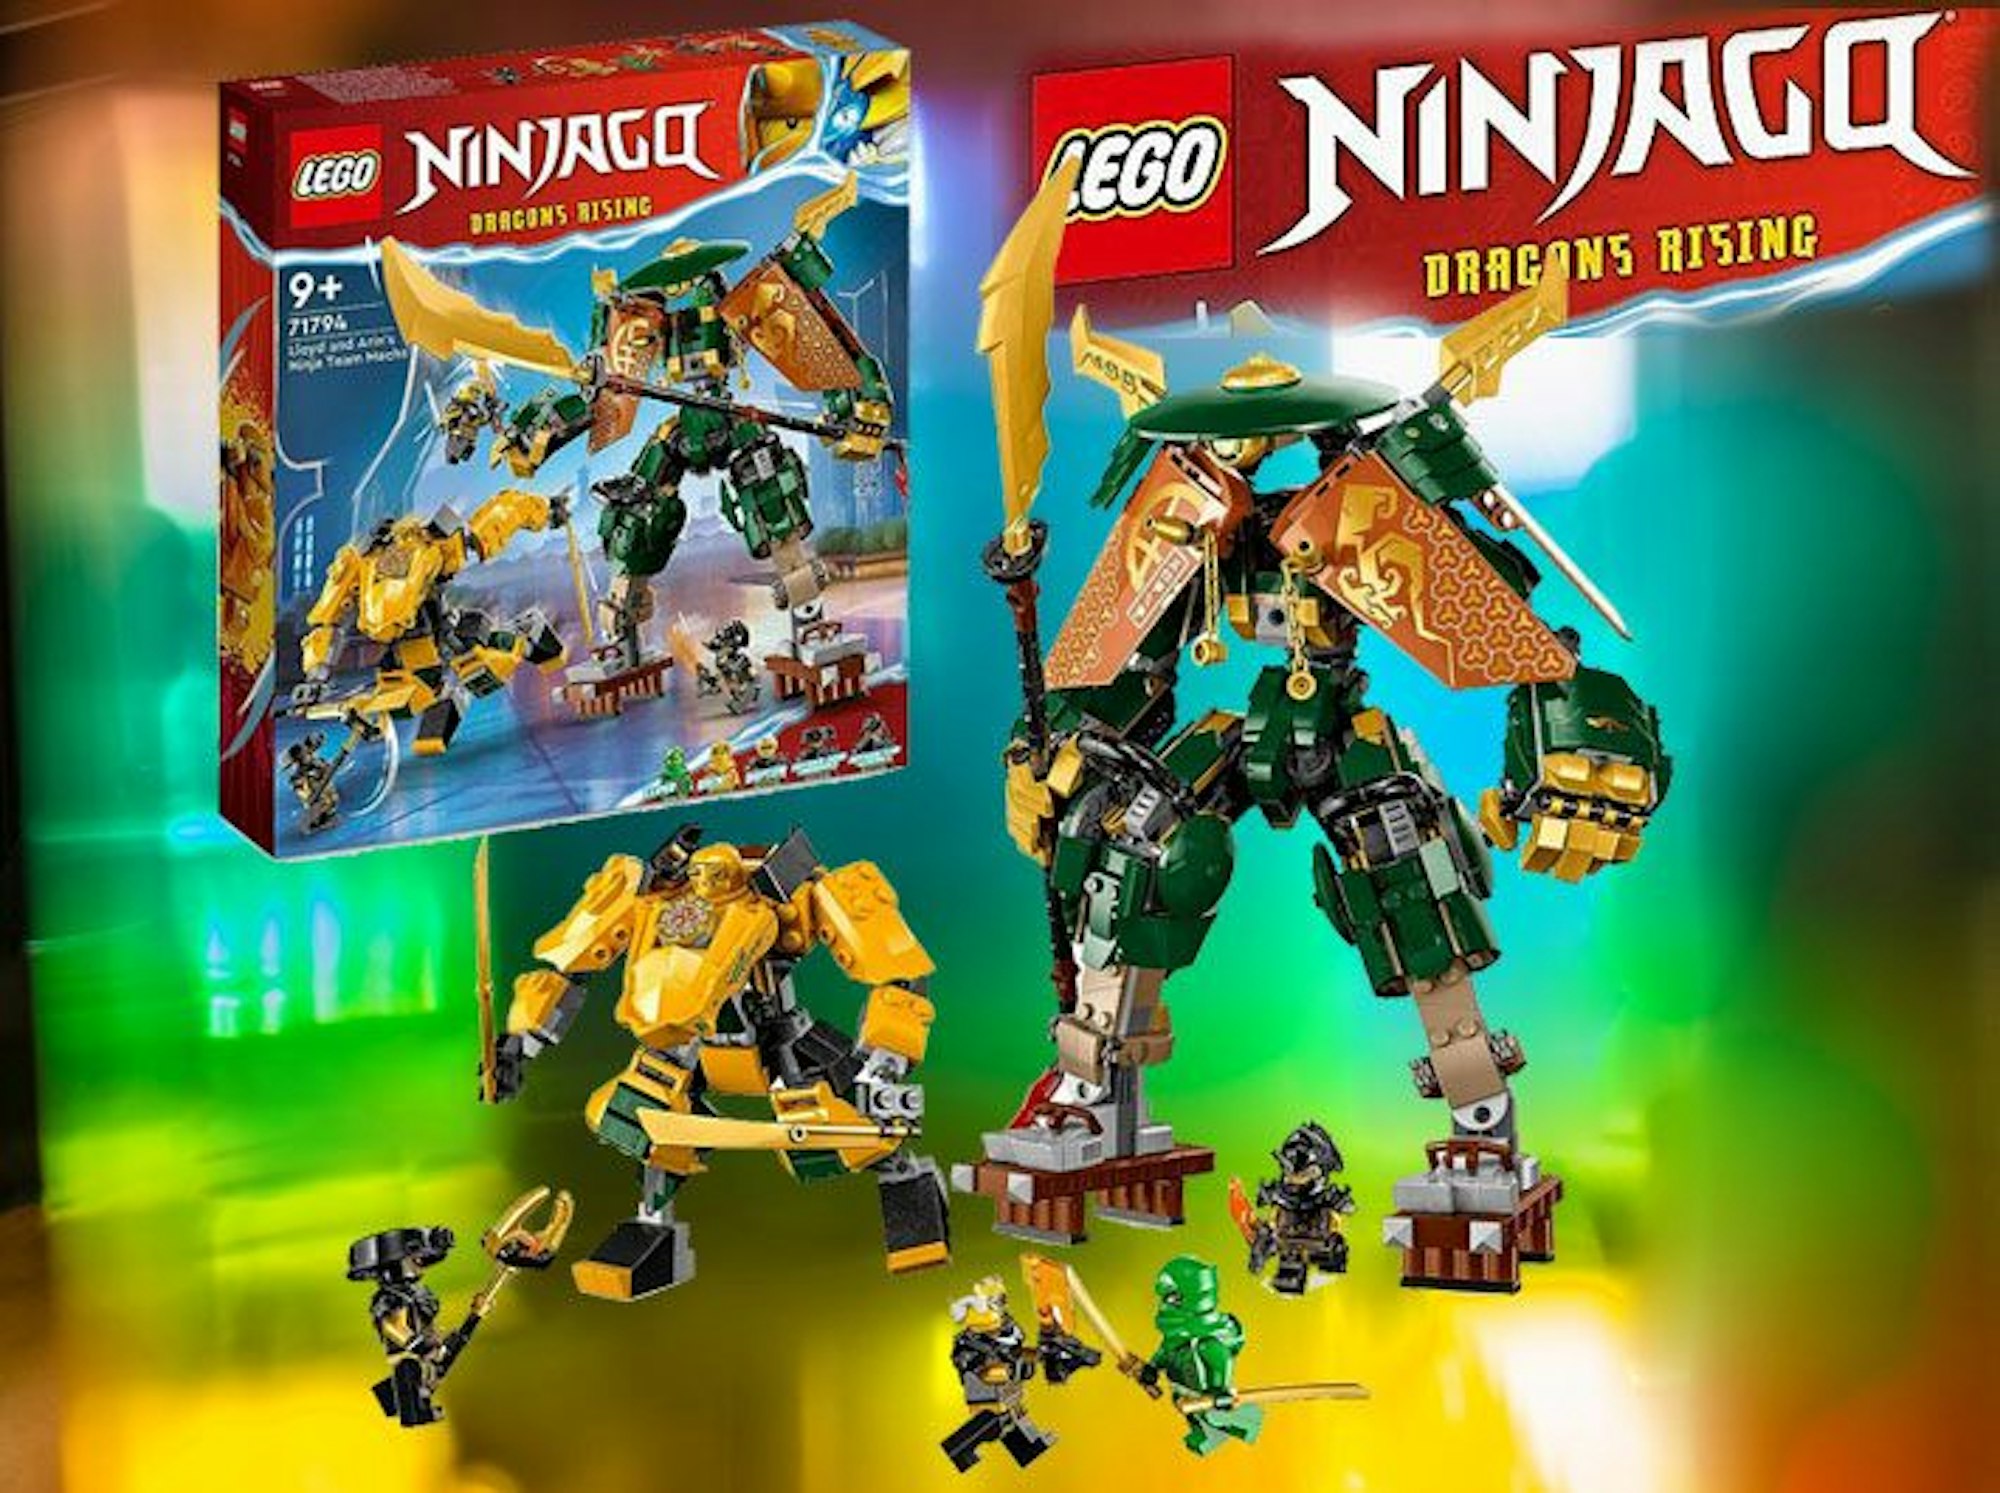 Auf dem Bild ist ein Lego Ninjago Set zu sehen.